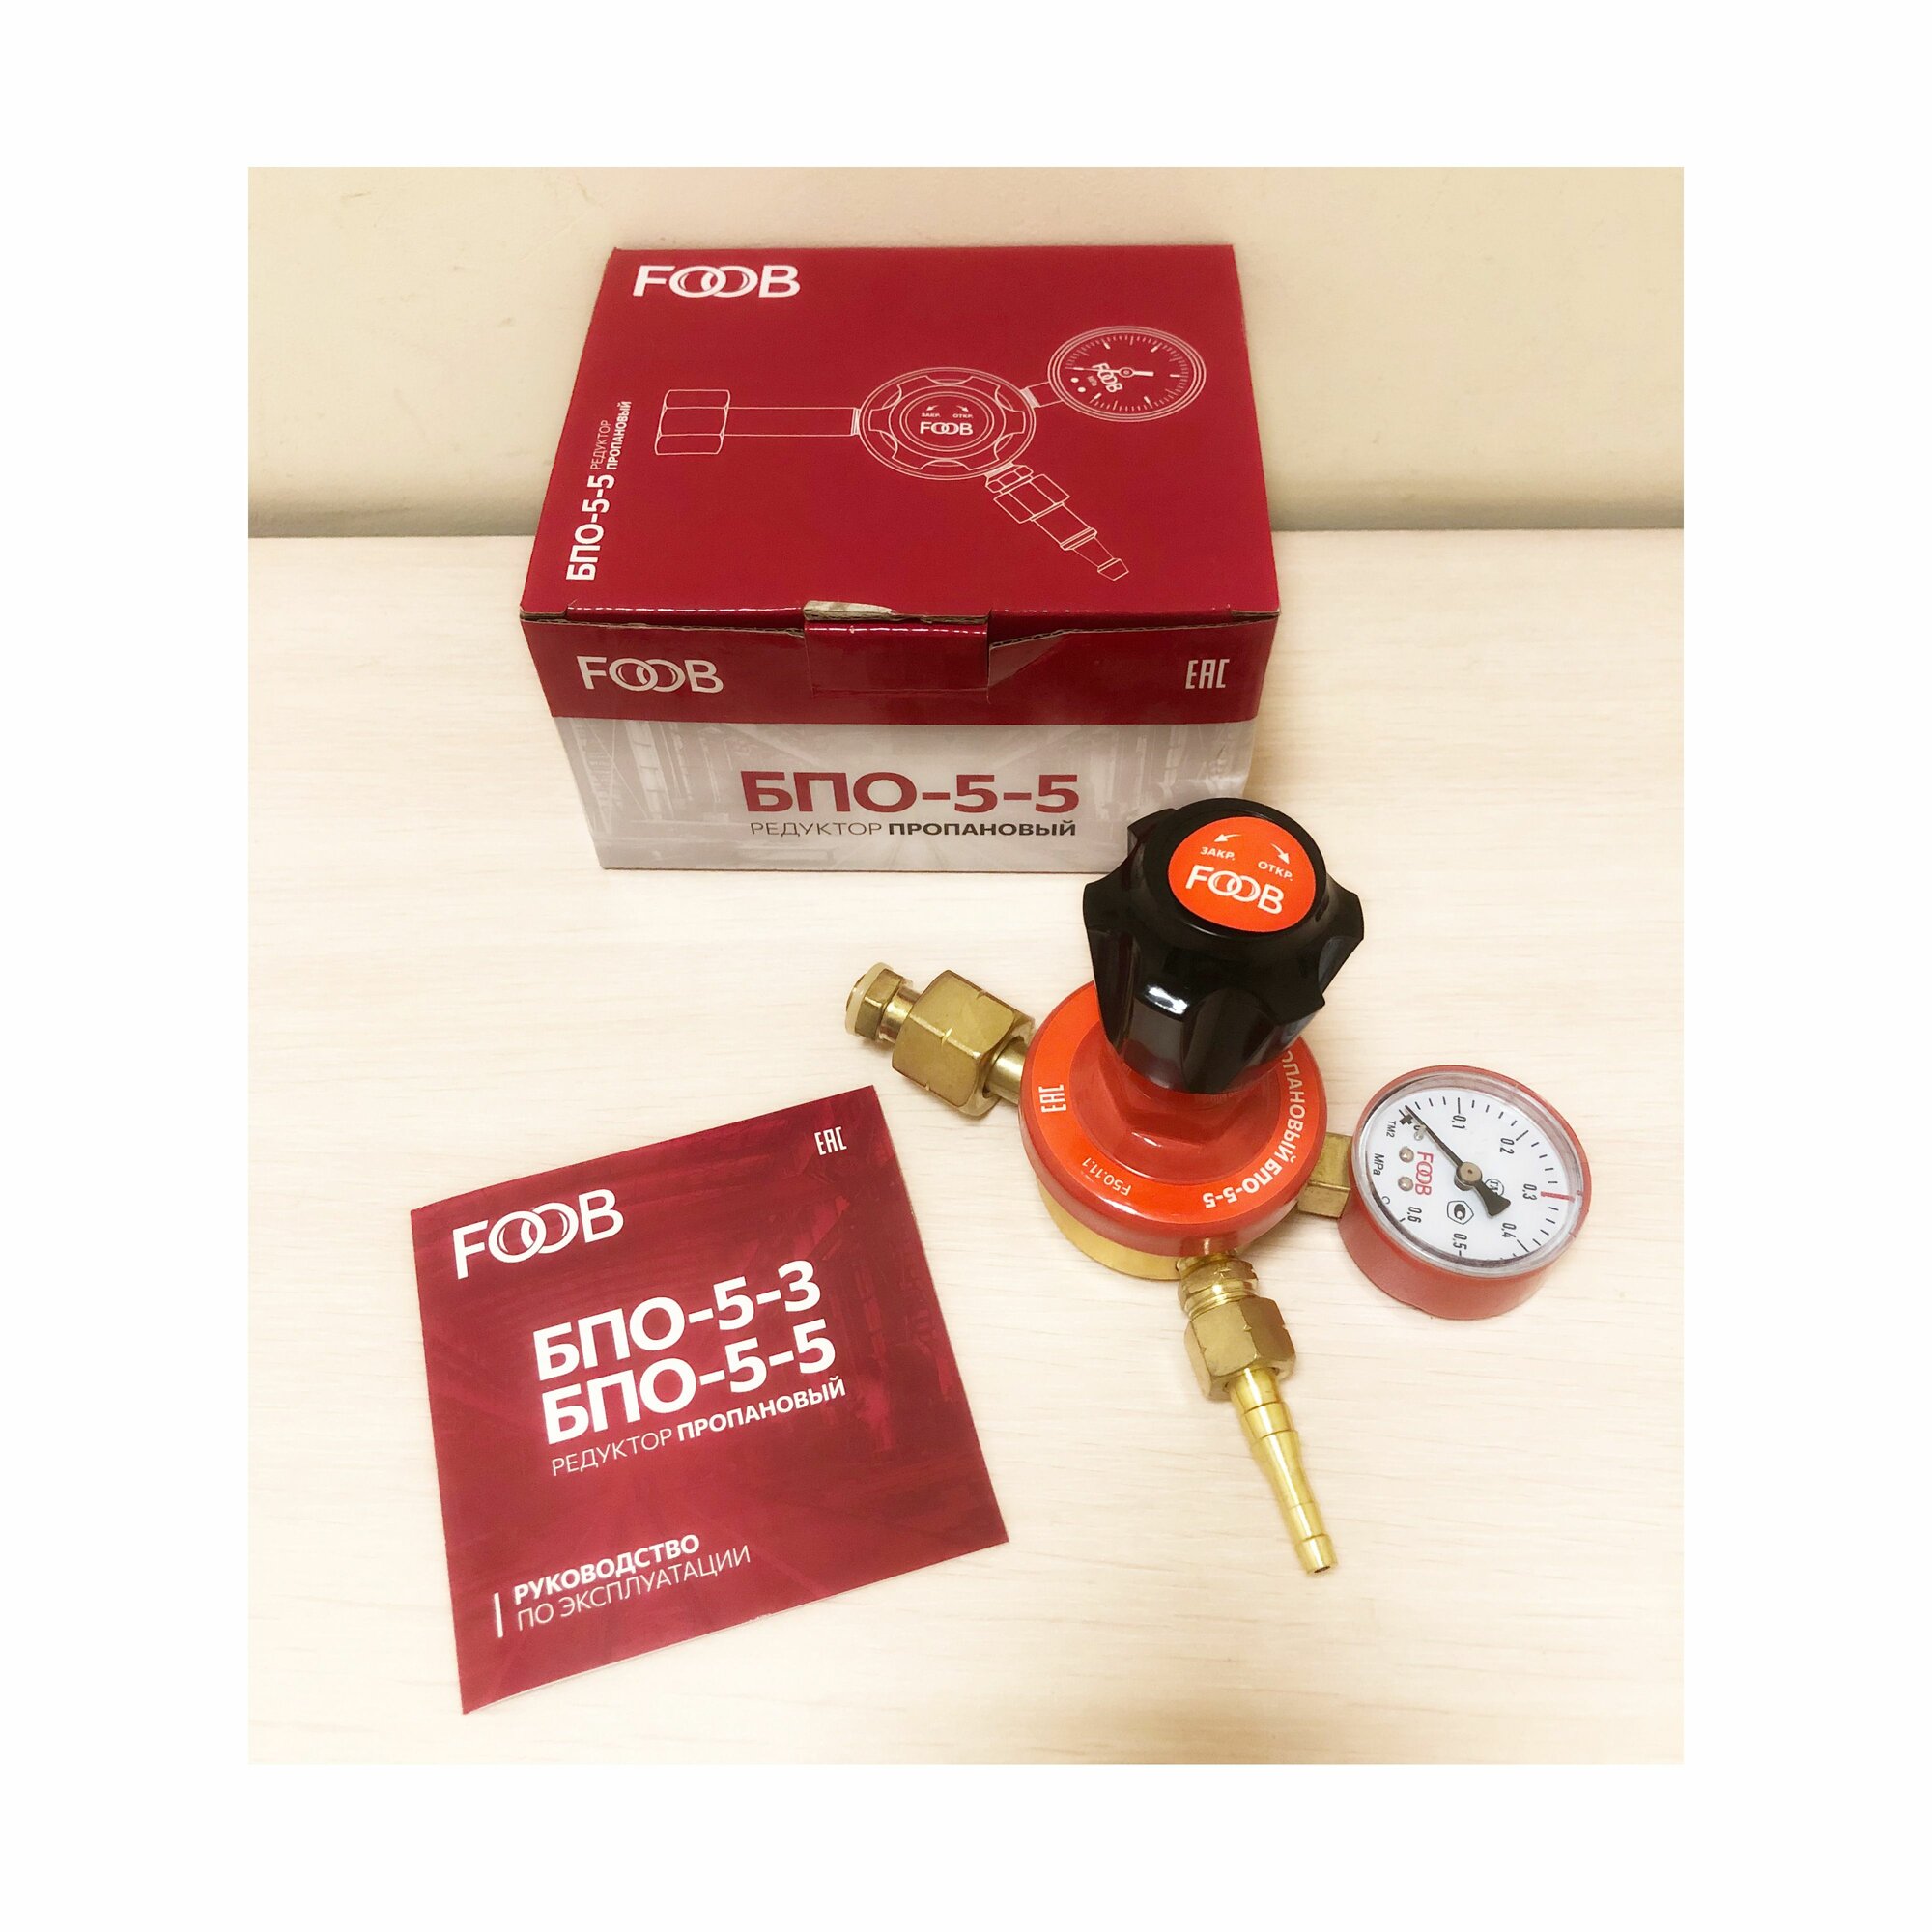 Регулятор давления сжиженного газа БПО - 5 - 5 FOOB 50.11.1